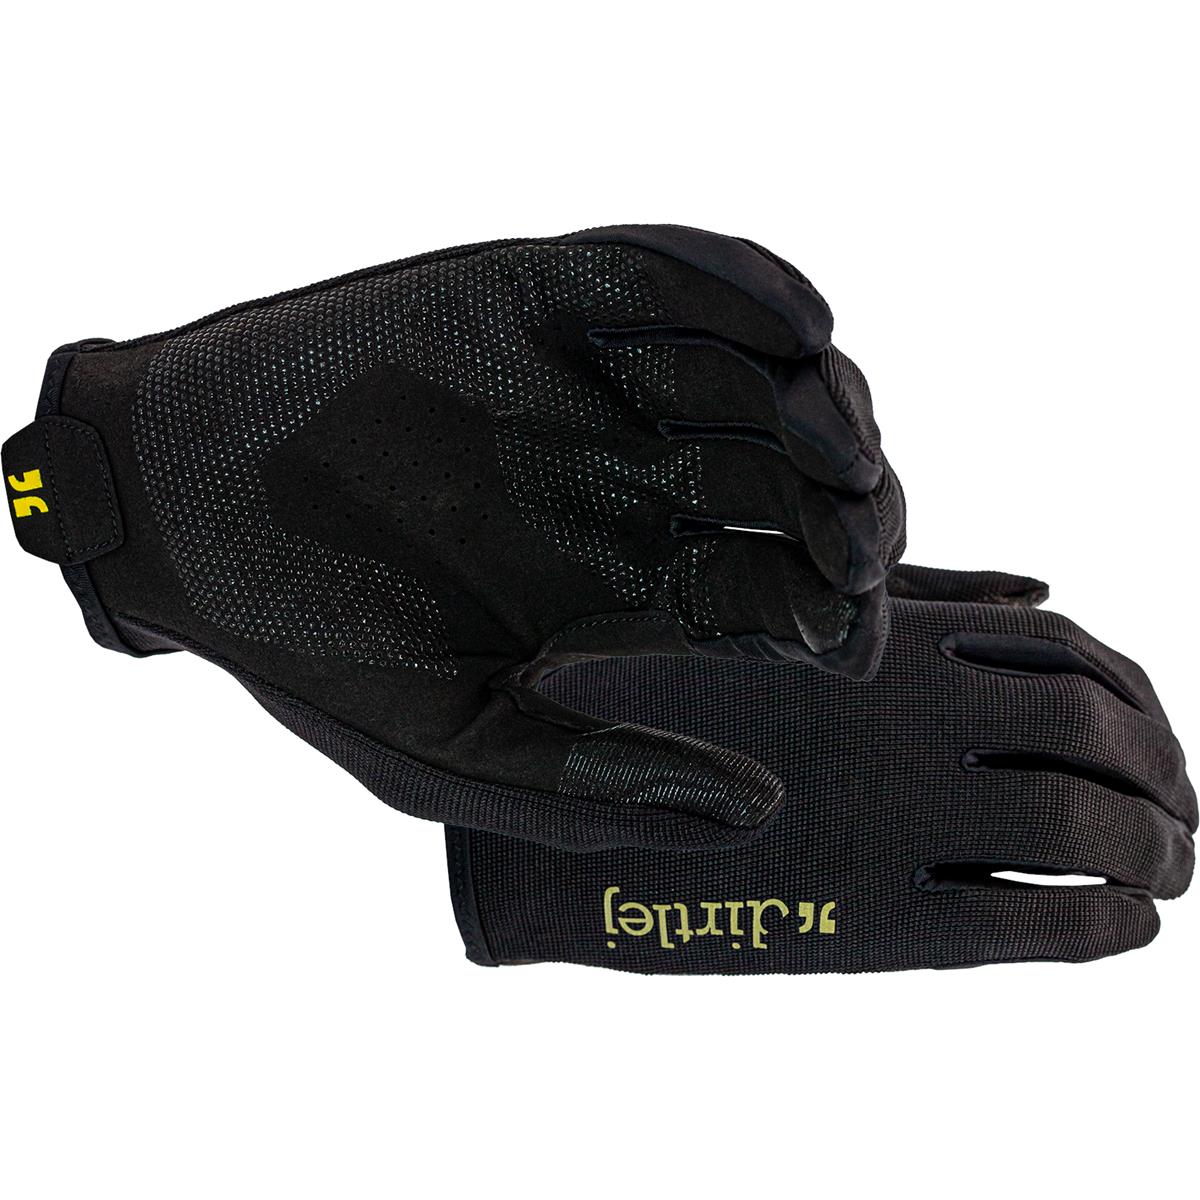 Dirtlej MTB Gloves  Black